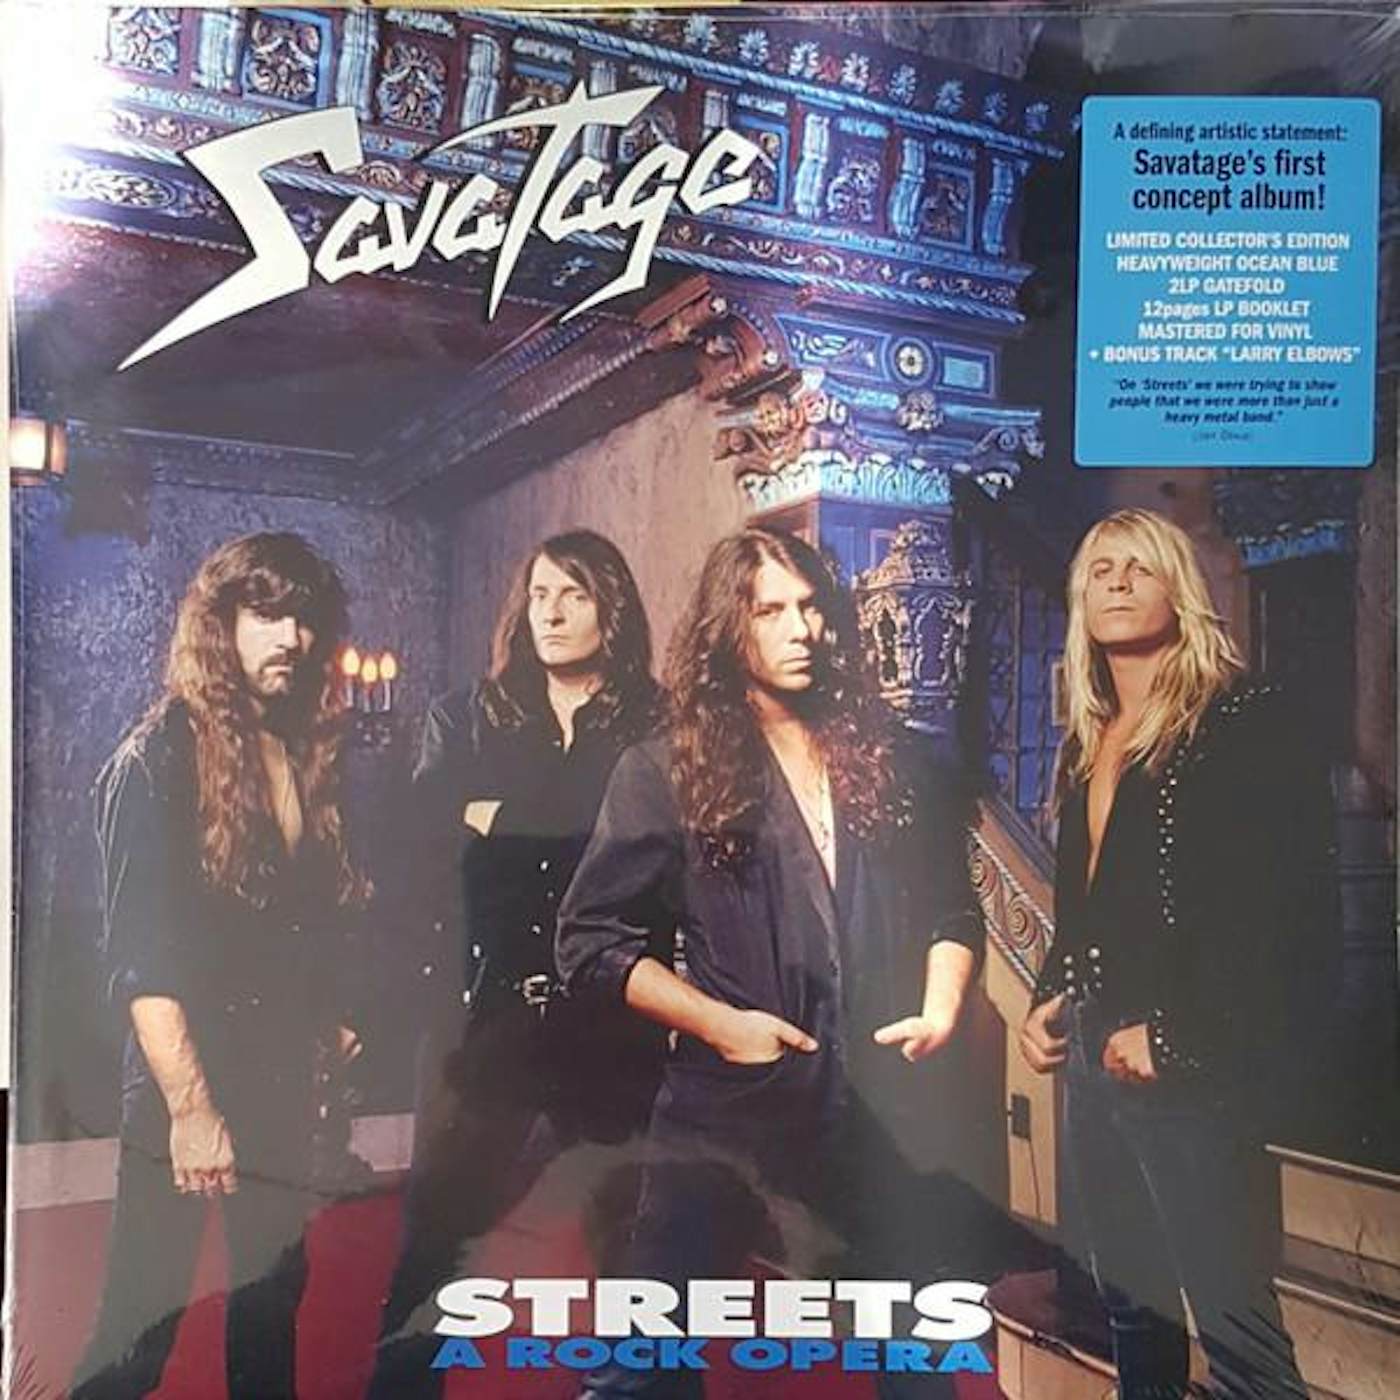 Savatage STREETS - A ROCK OPERA (OCEAN BLUE VINYL/2LP) Vinyl Record